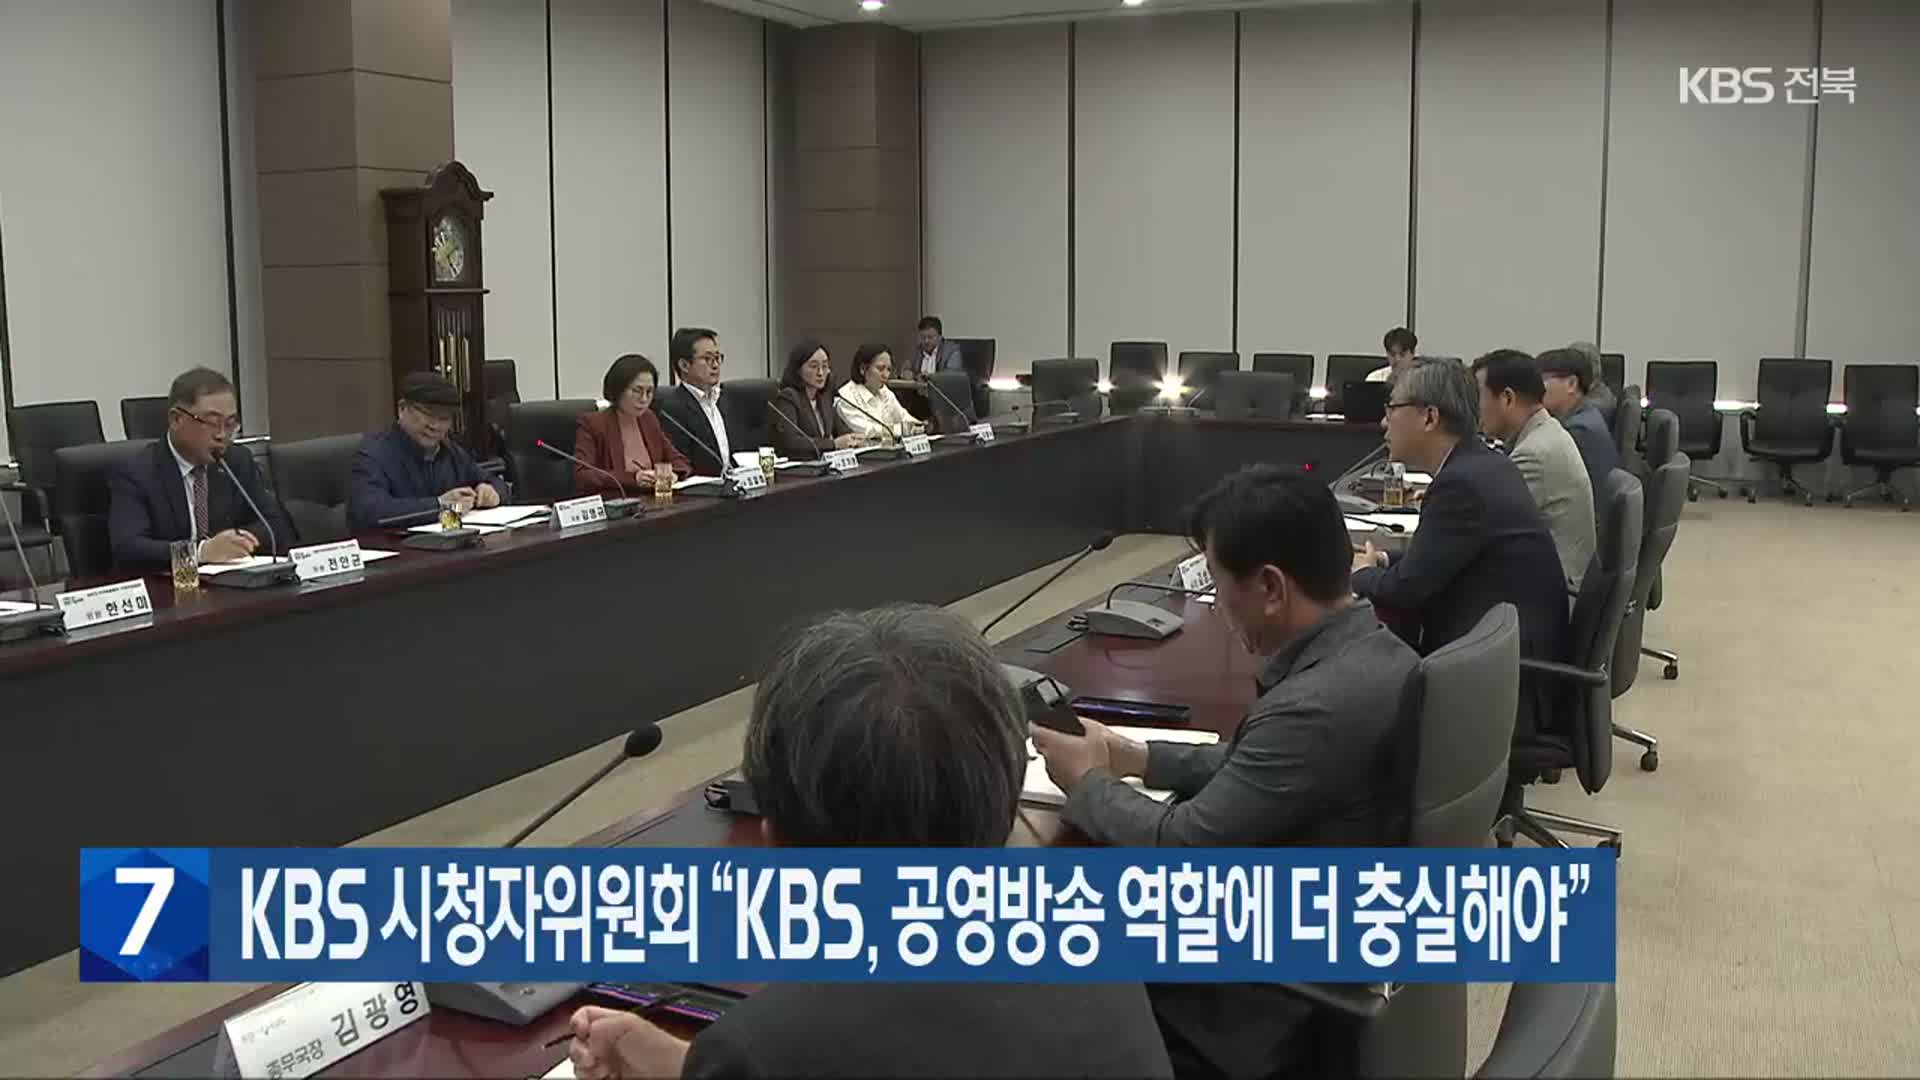 KBS 시청자위원회 “KBS, 공영방송 역할에 더 충실해야”